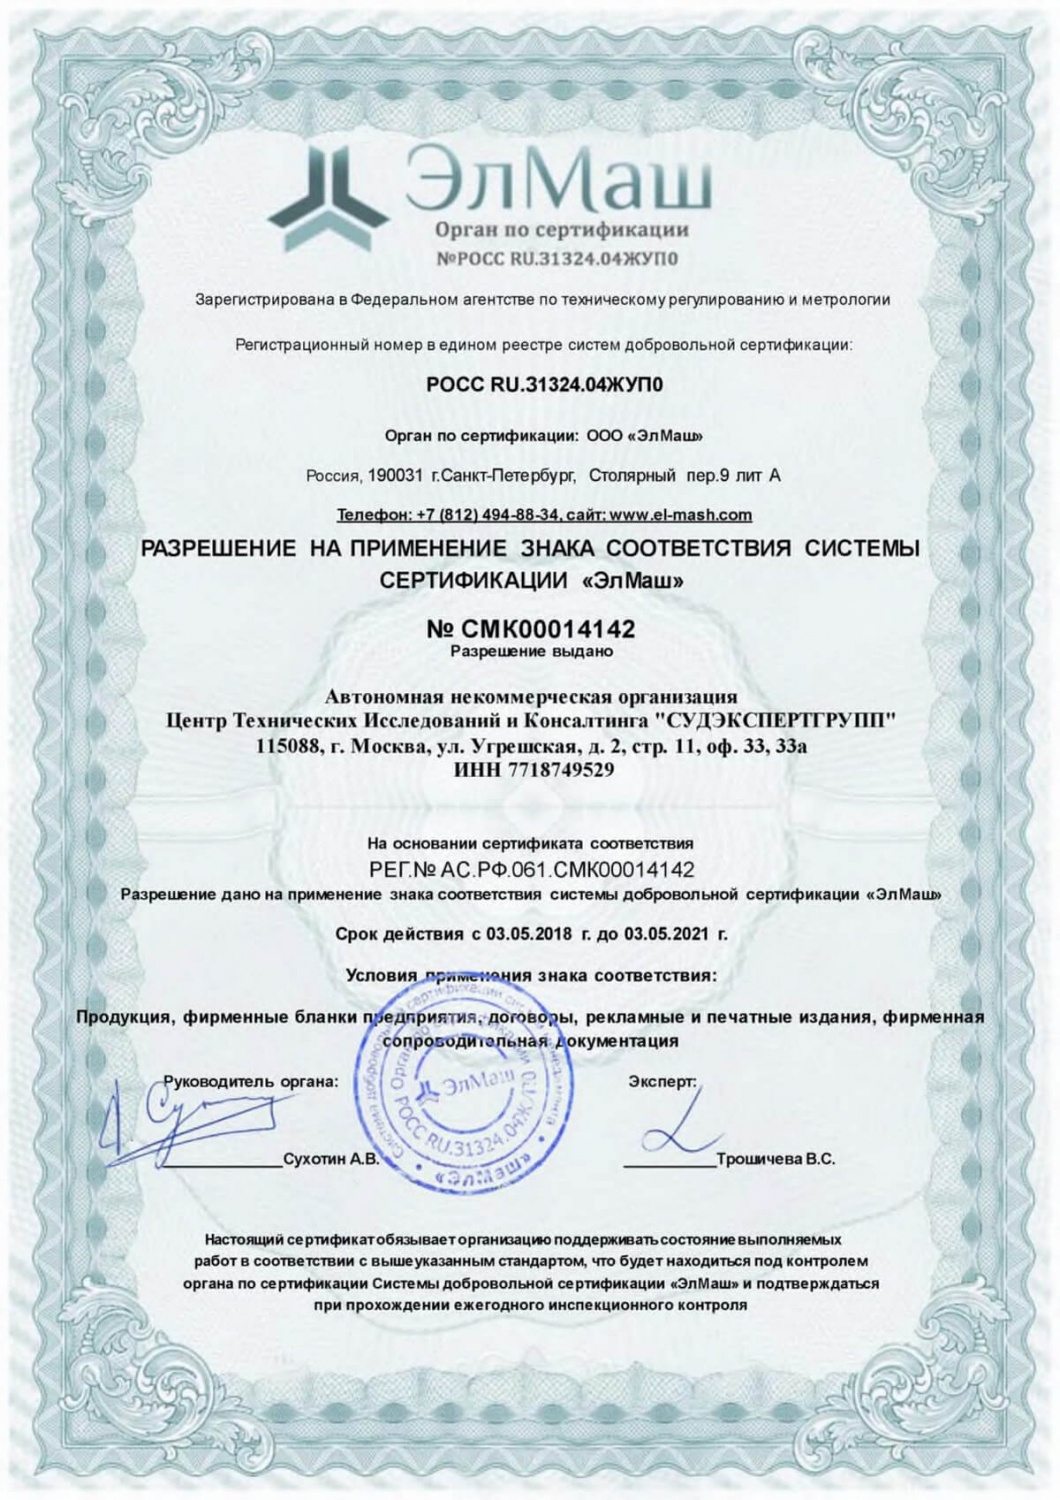 Разрешение на применение знака соответствия системы сертификации